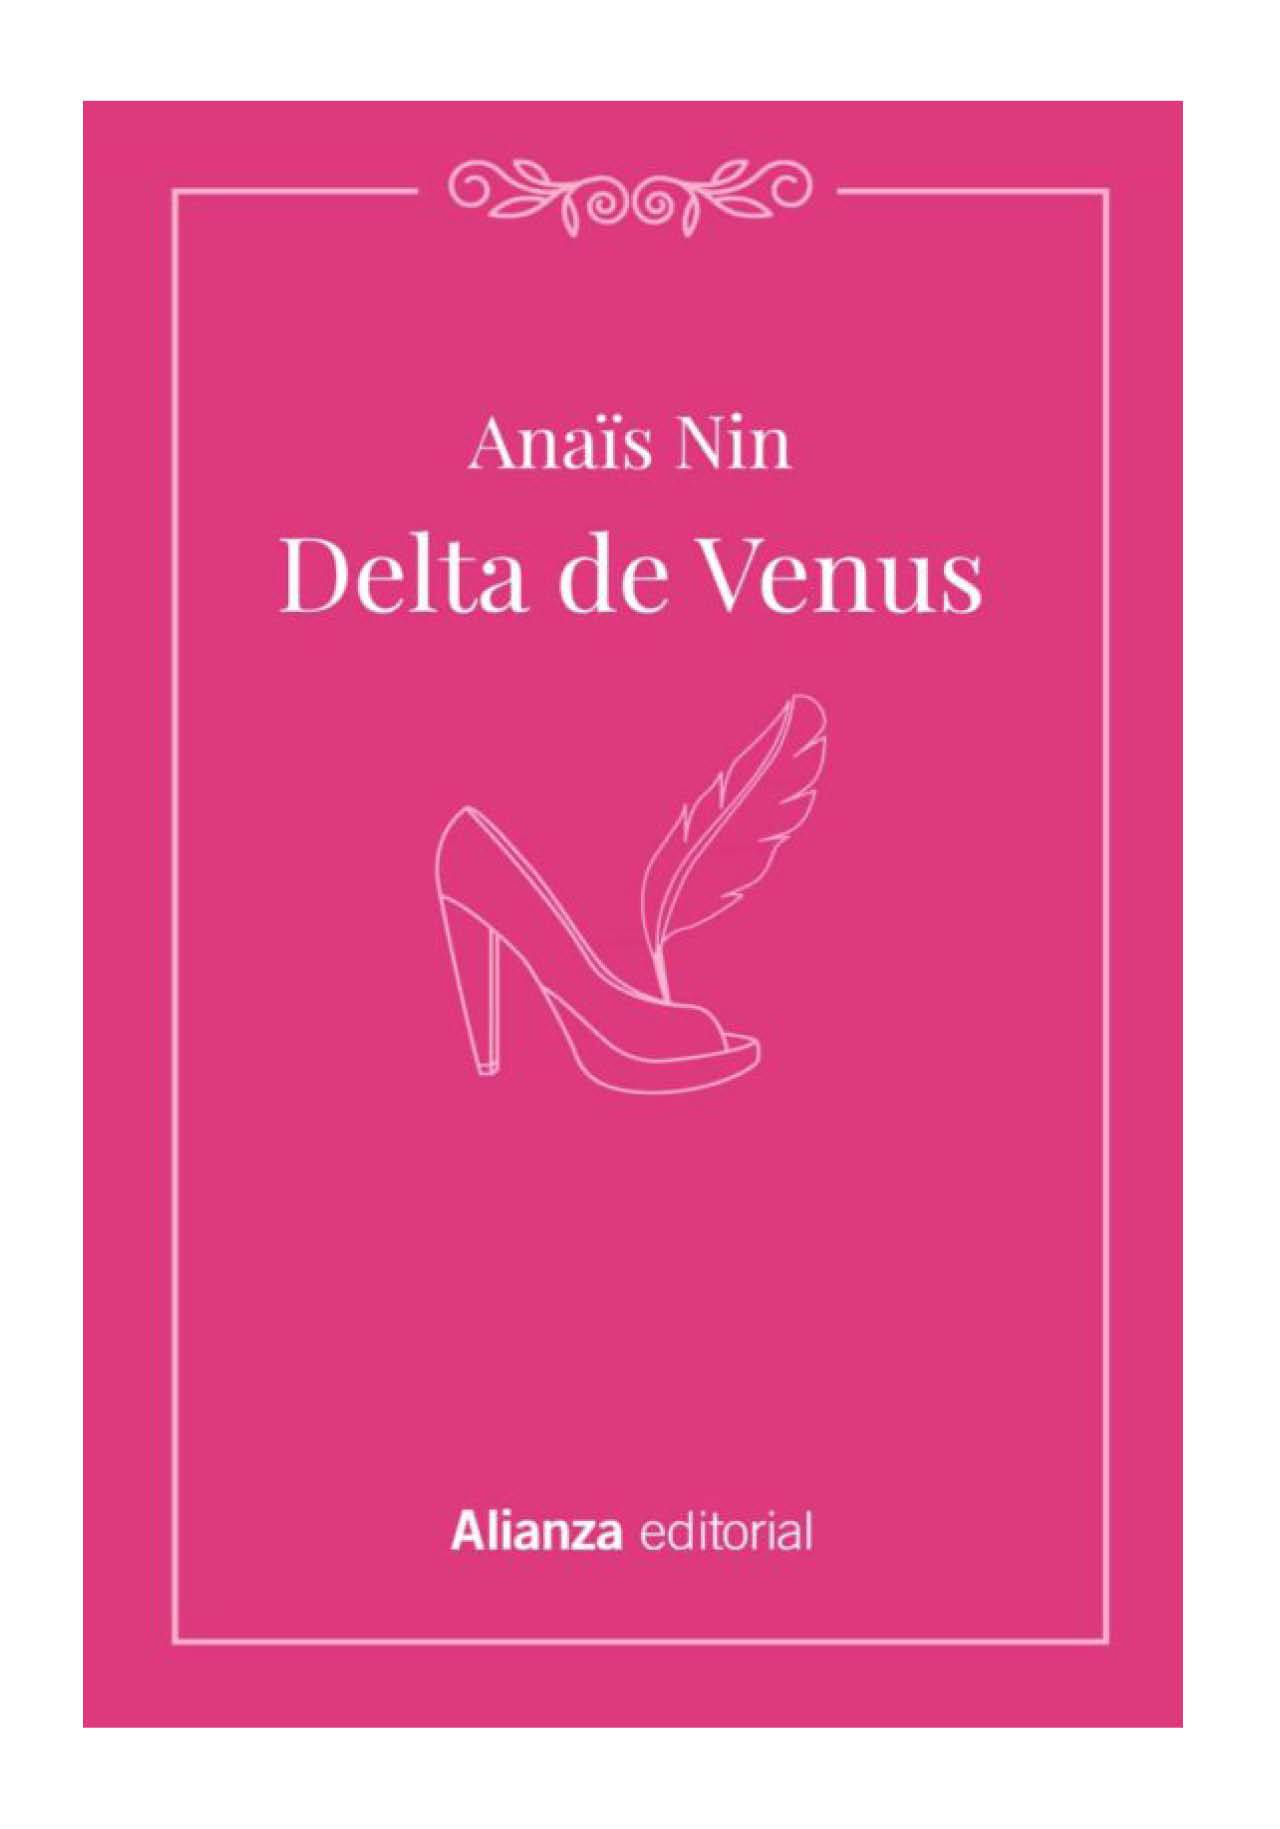 Delta de Venus de Anaïs Nin (1977)